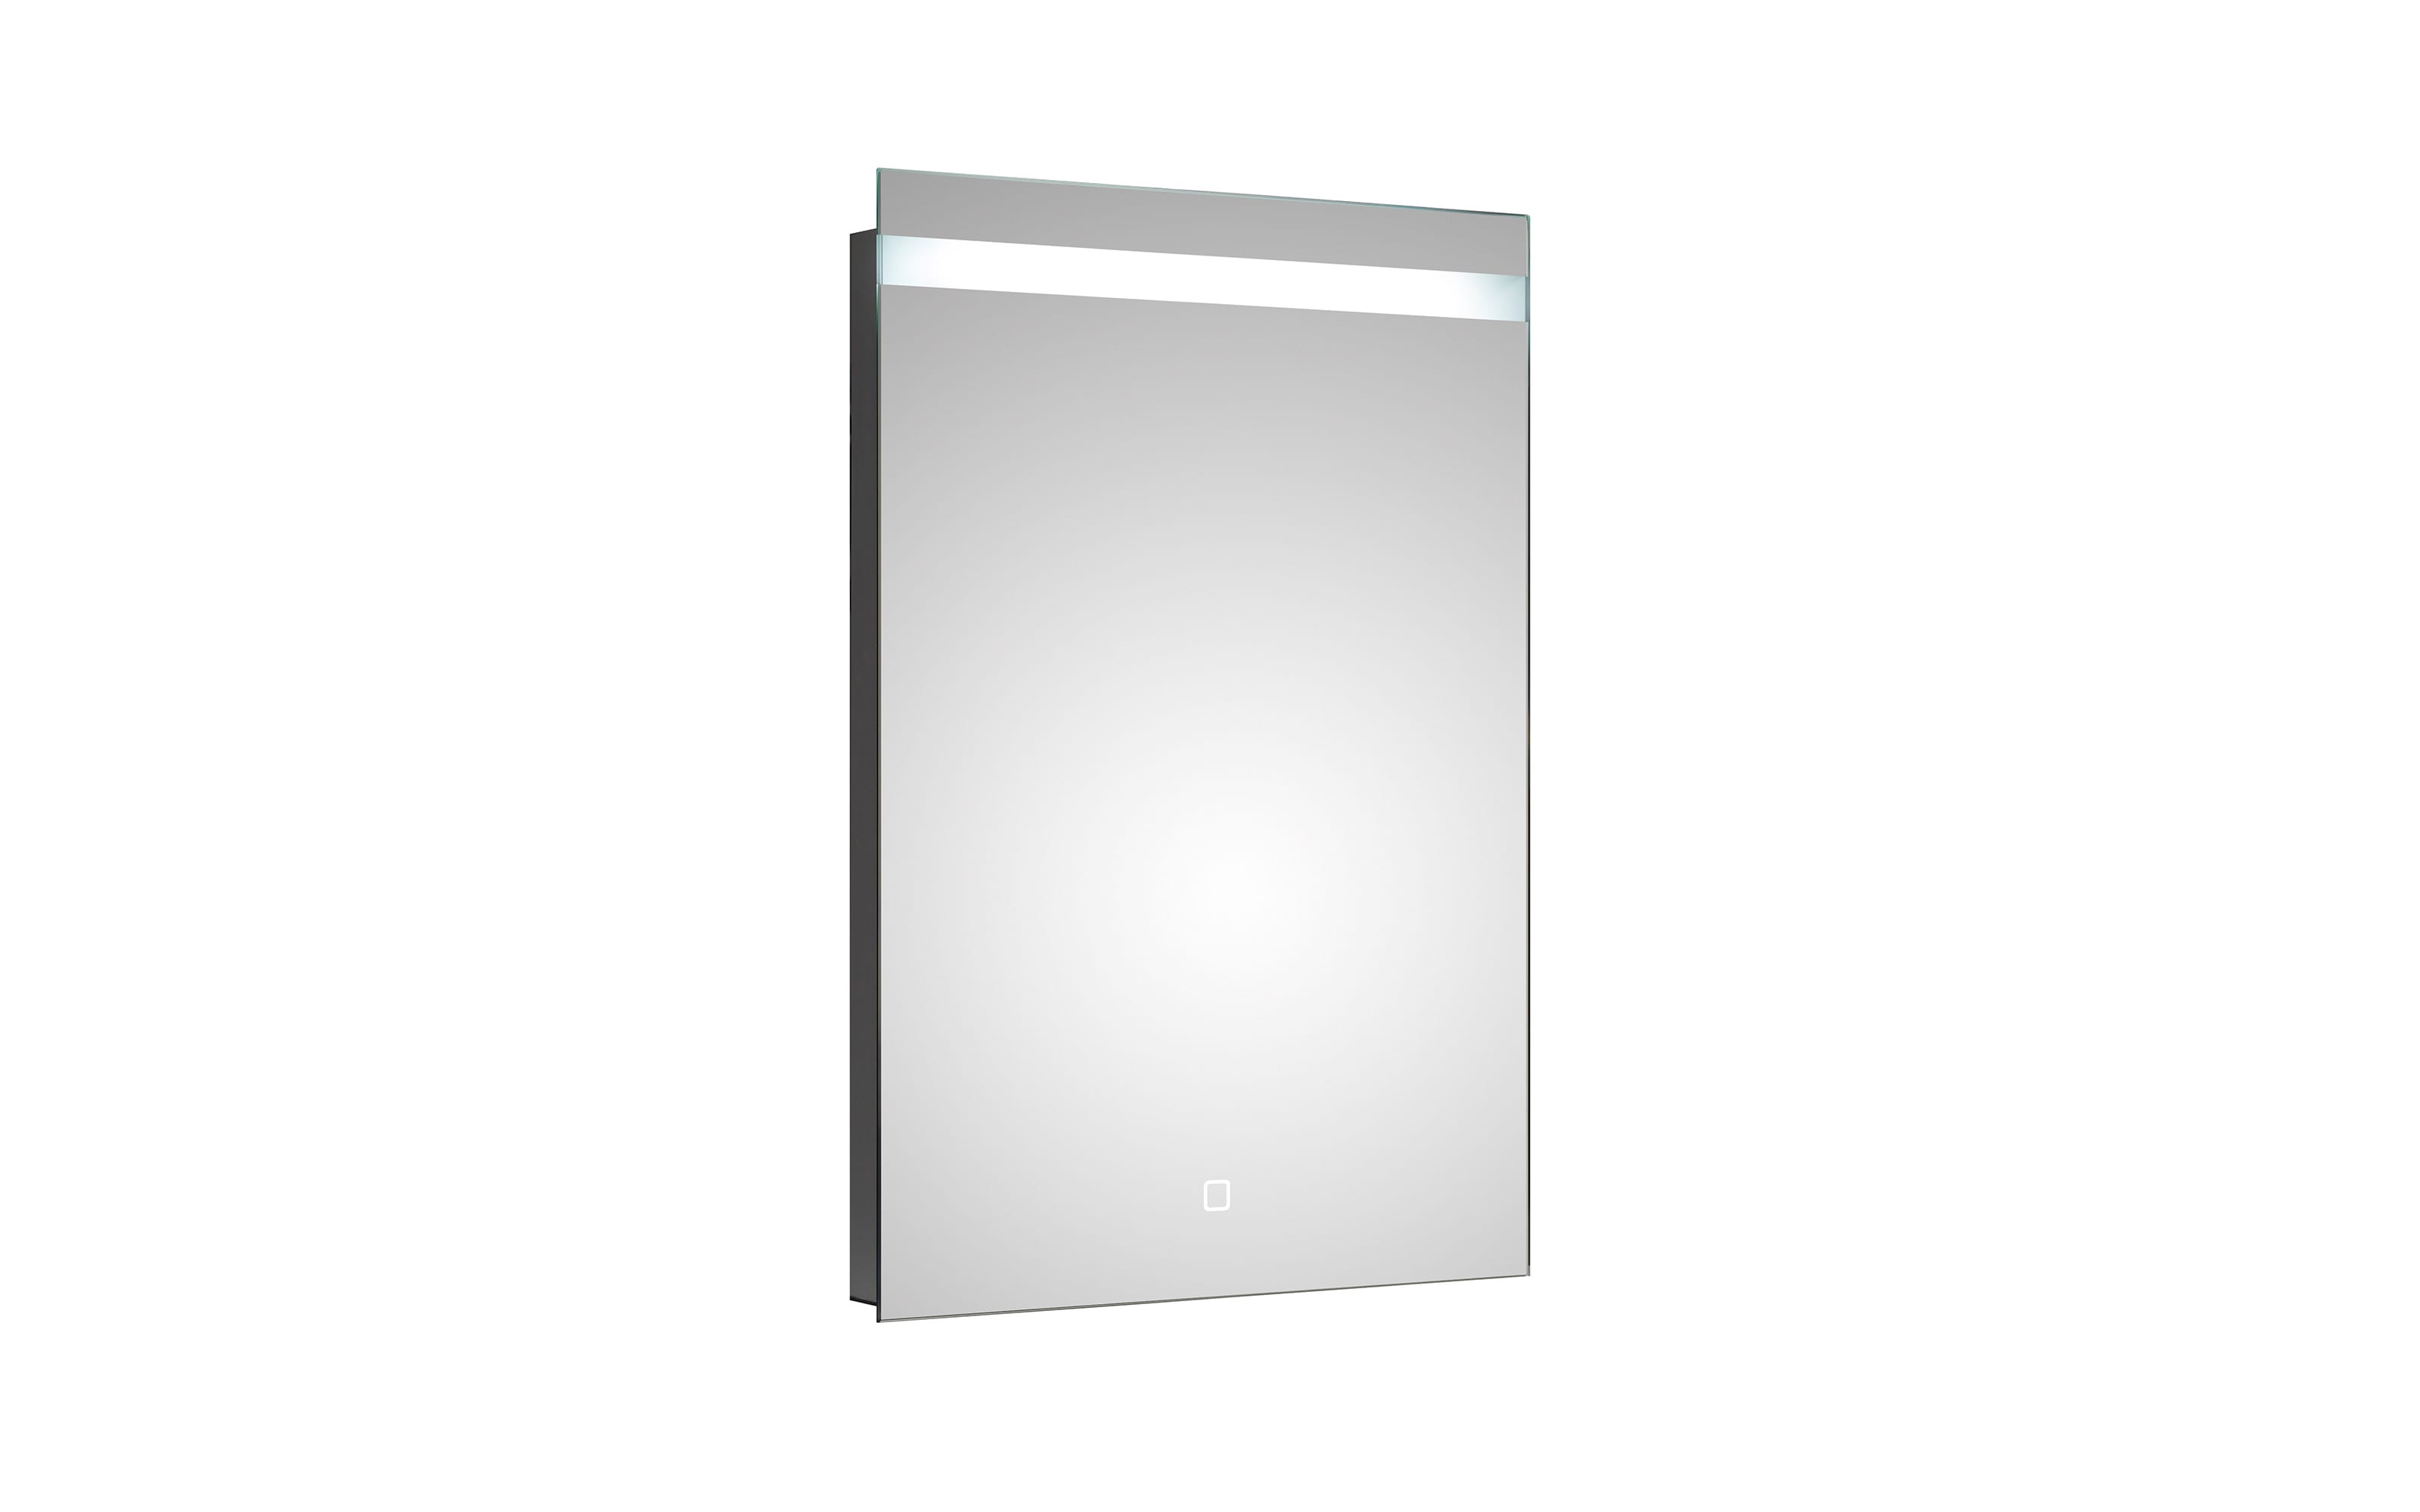 LED-Spiegel 26, Aluminium, 50 x 70 cm, inkl. Touchsensor